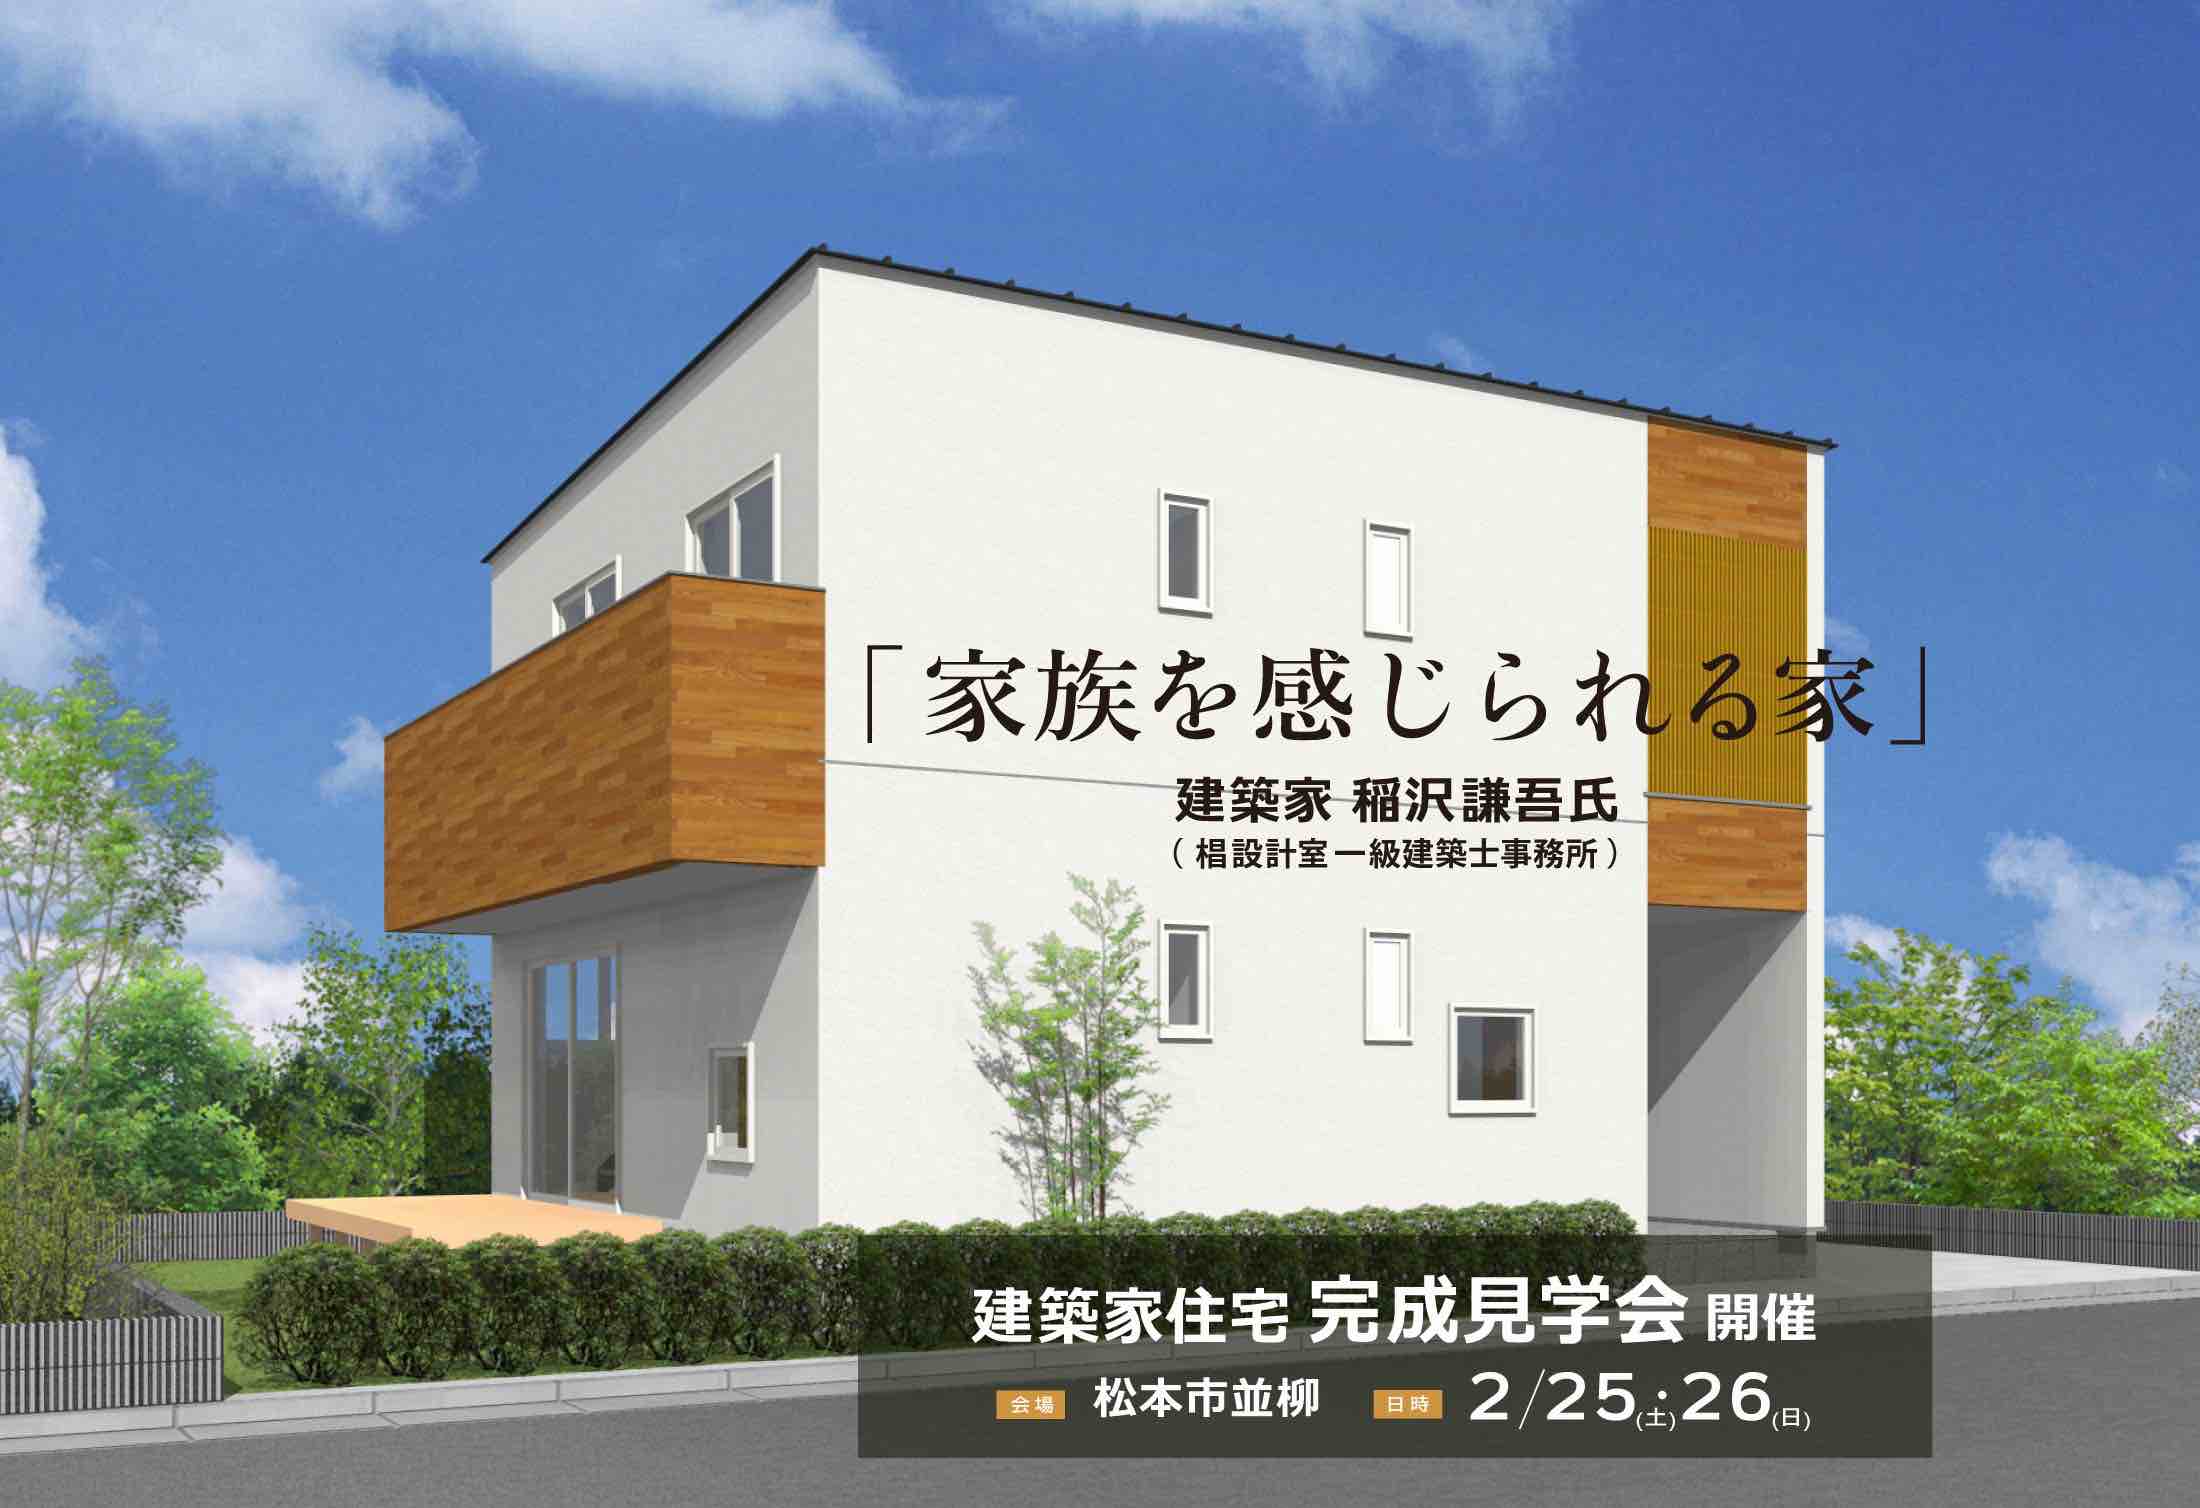 2023年2月25日・26日 「家族を感じられる家」建築家住宅 完成見学会@松本市並柳